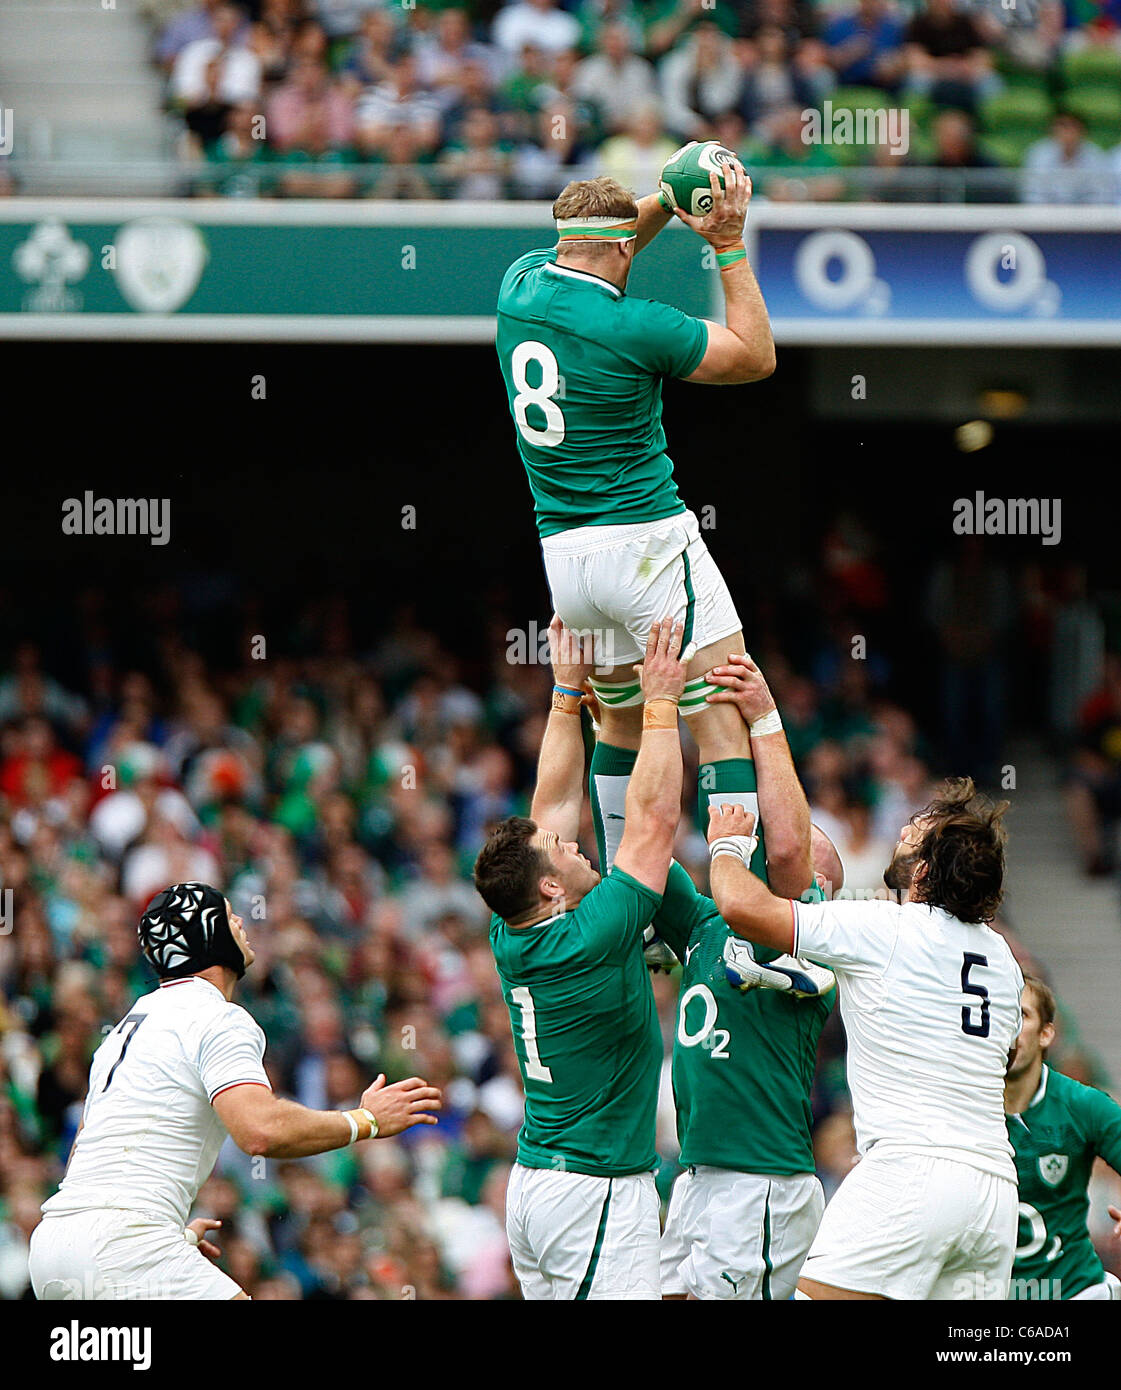 Ireland rugby immagini e fotografie stock ad alta risoluzione - Alamy